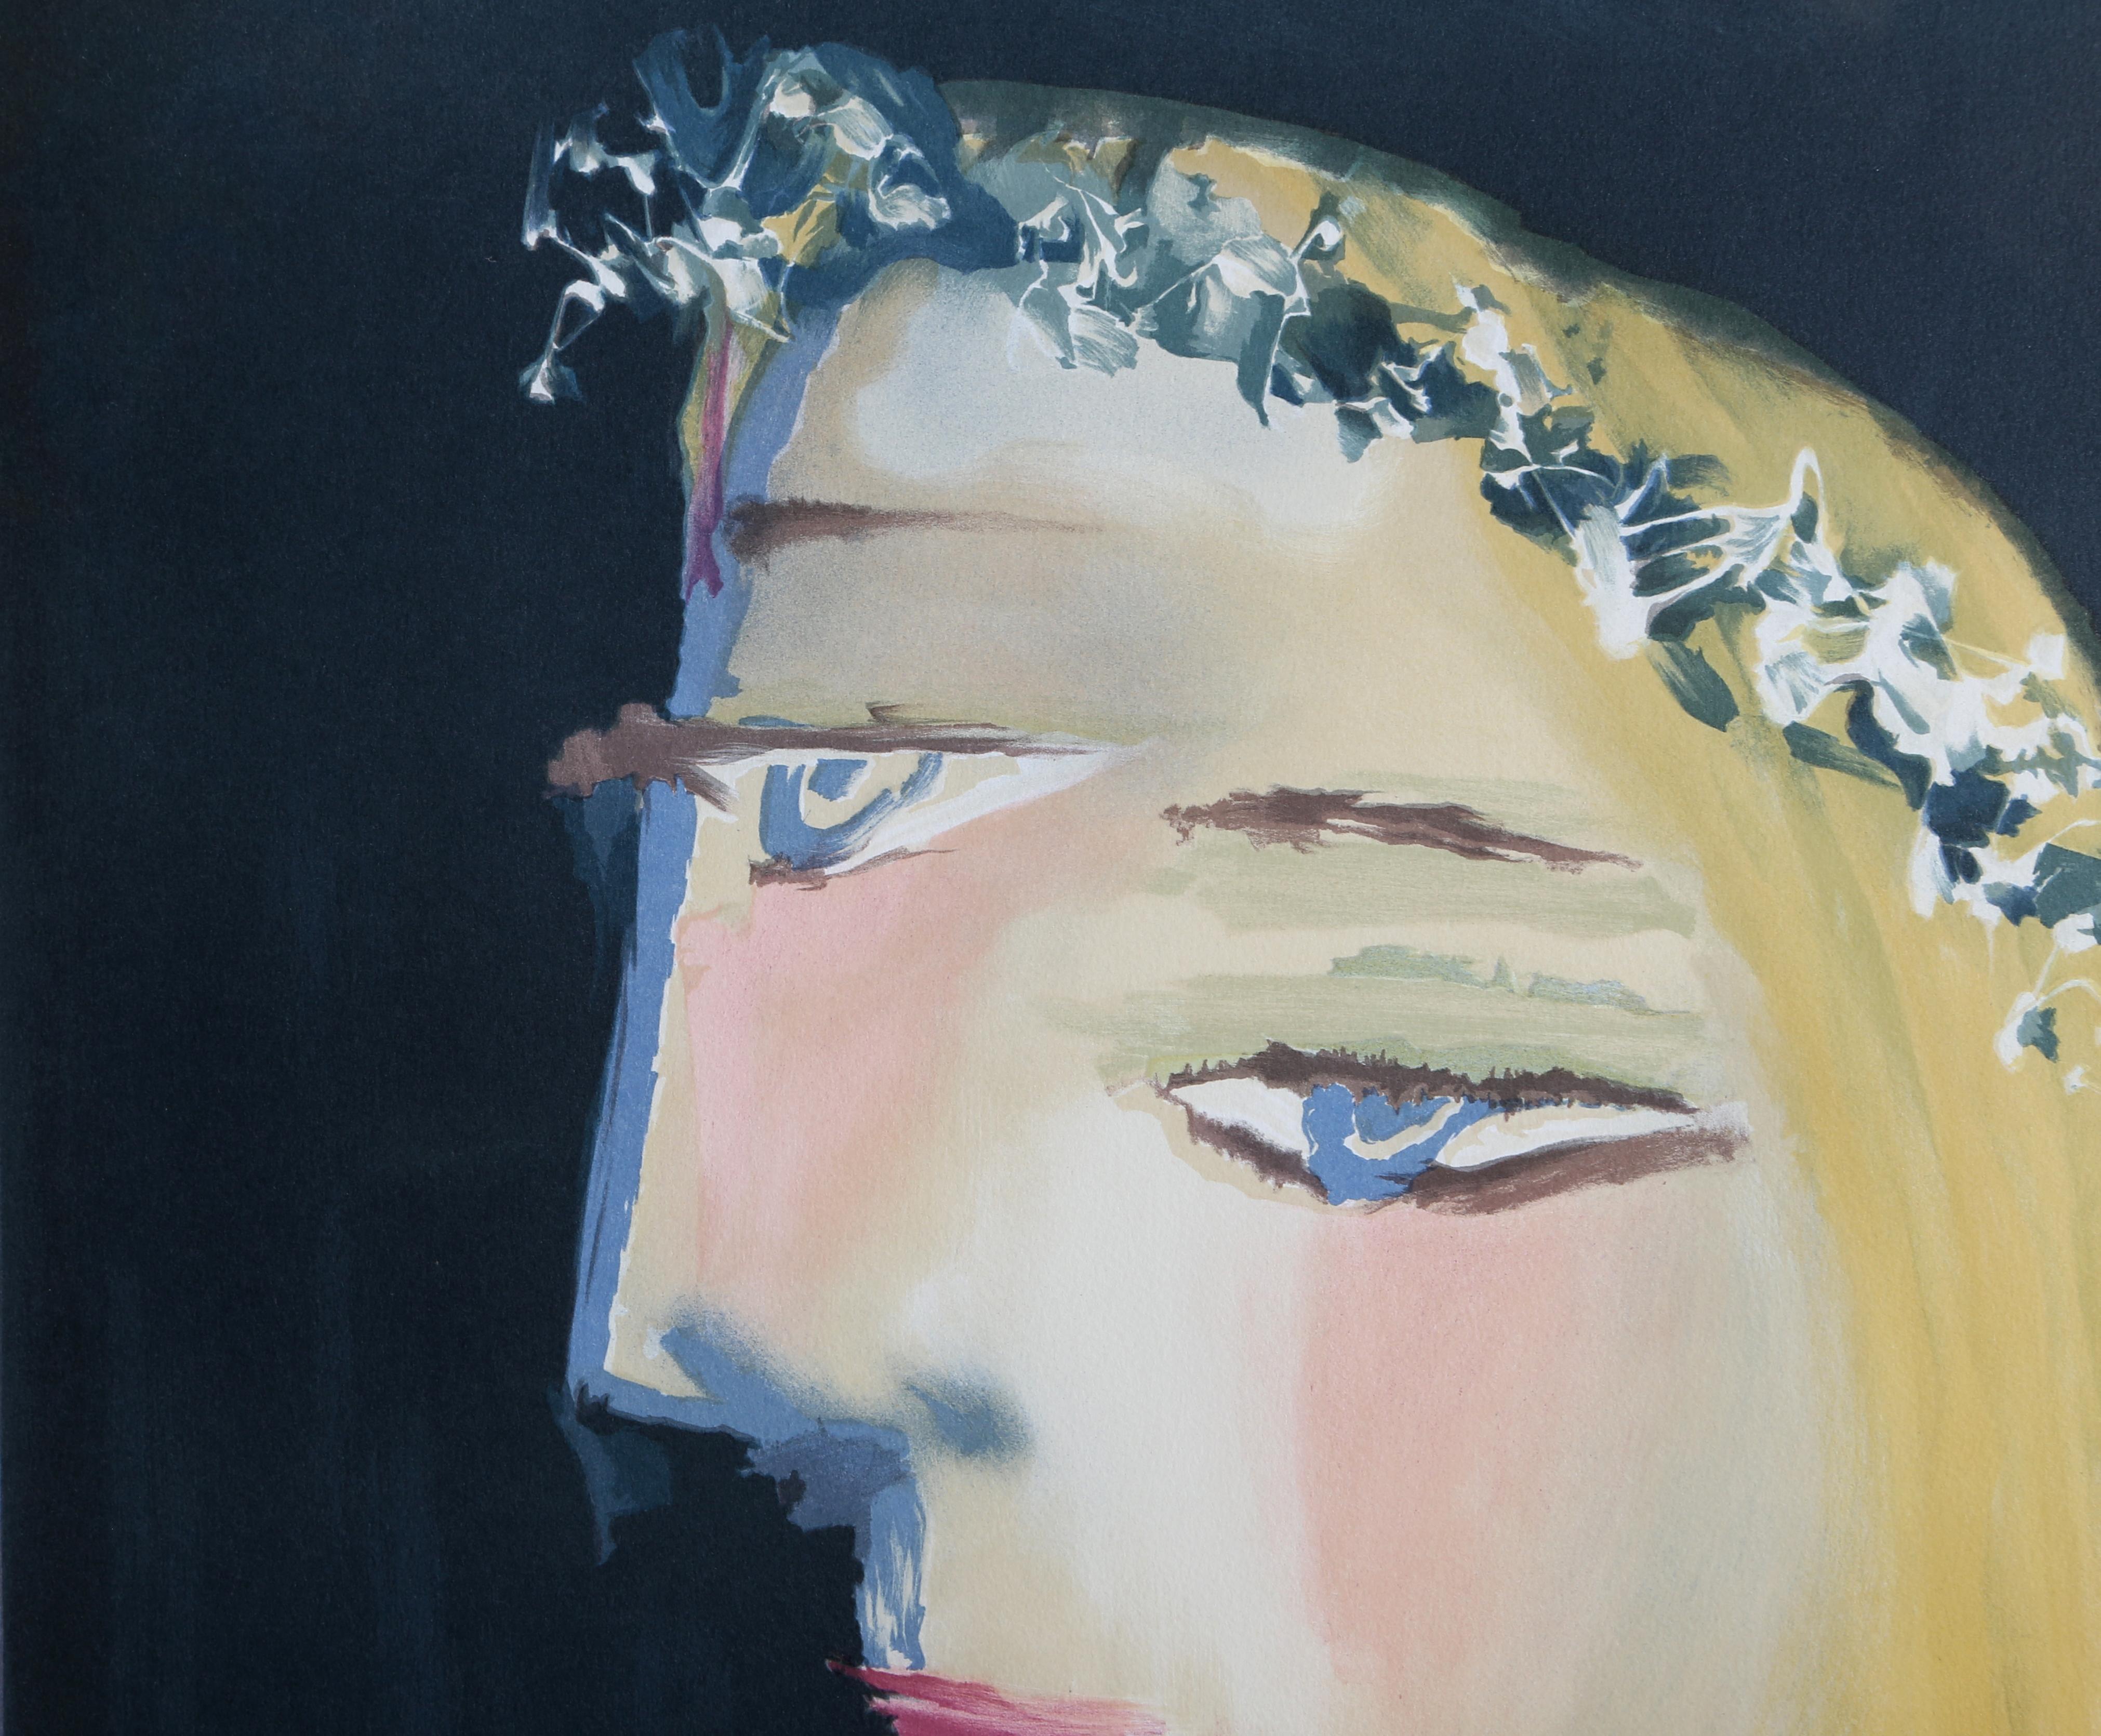 Femme a la Robe, Blanche Couronee de Fleurs - Cubist Lithograph by Pablo Picasso For Sale 1